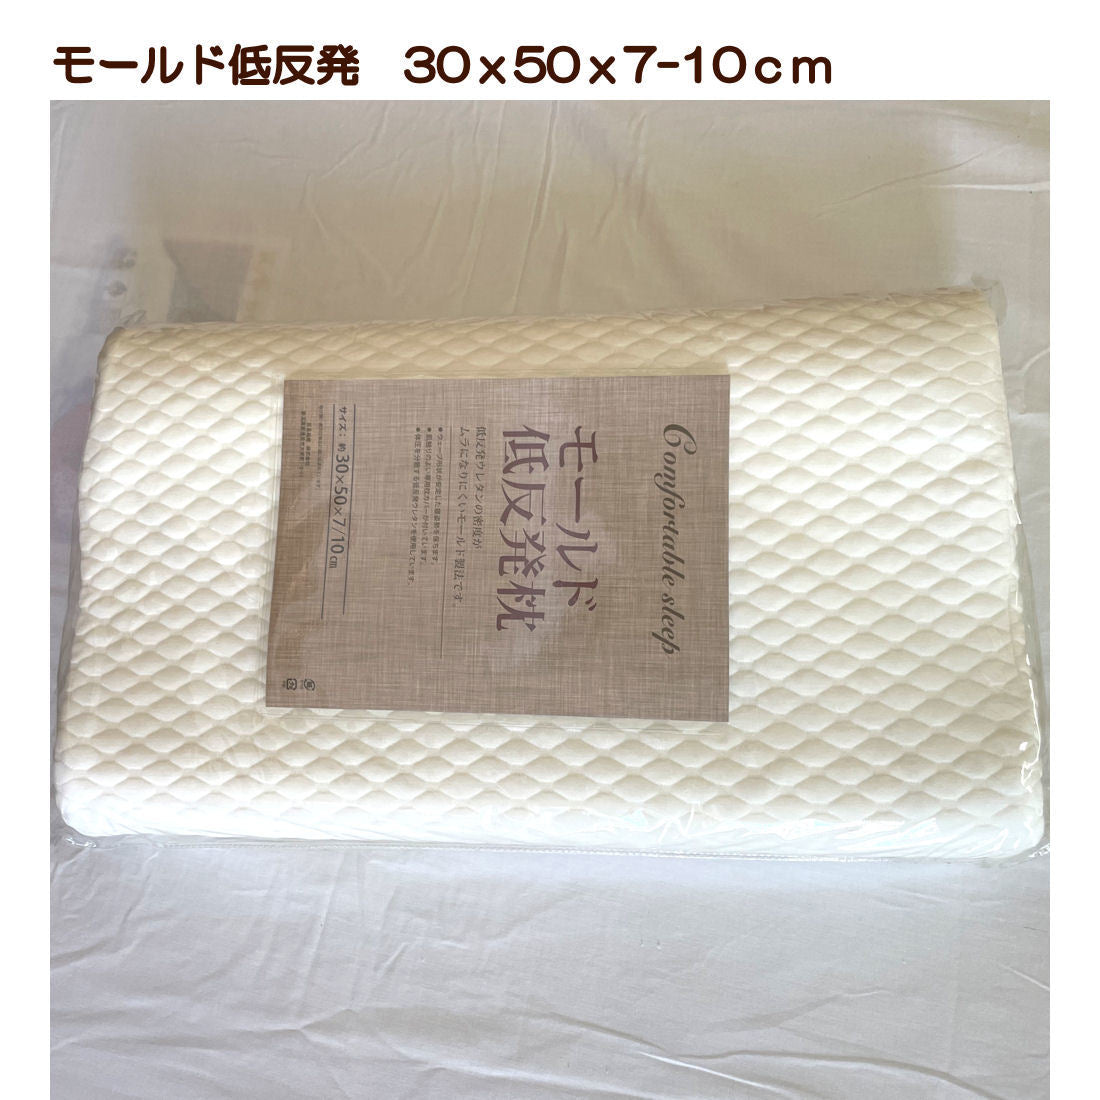 ヌード枕 30x50cm ウェーブ形状 低反発